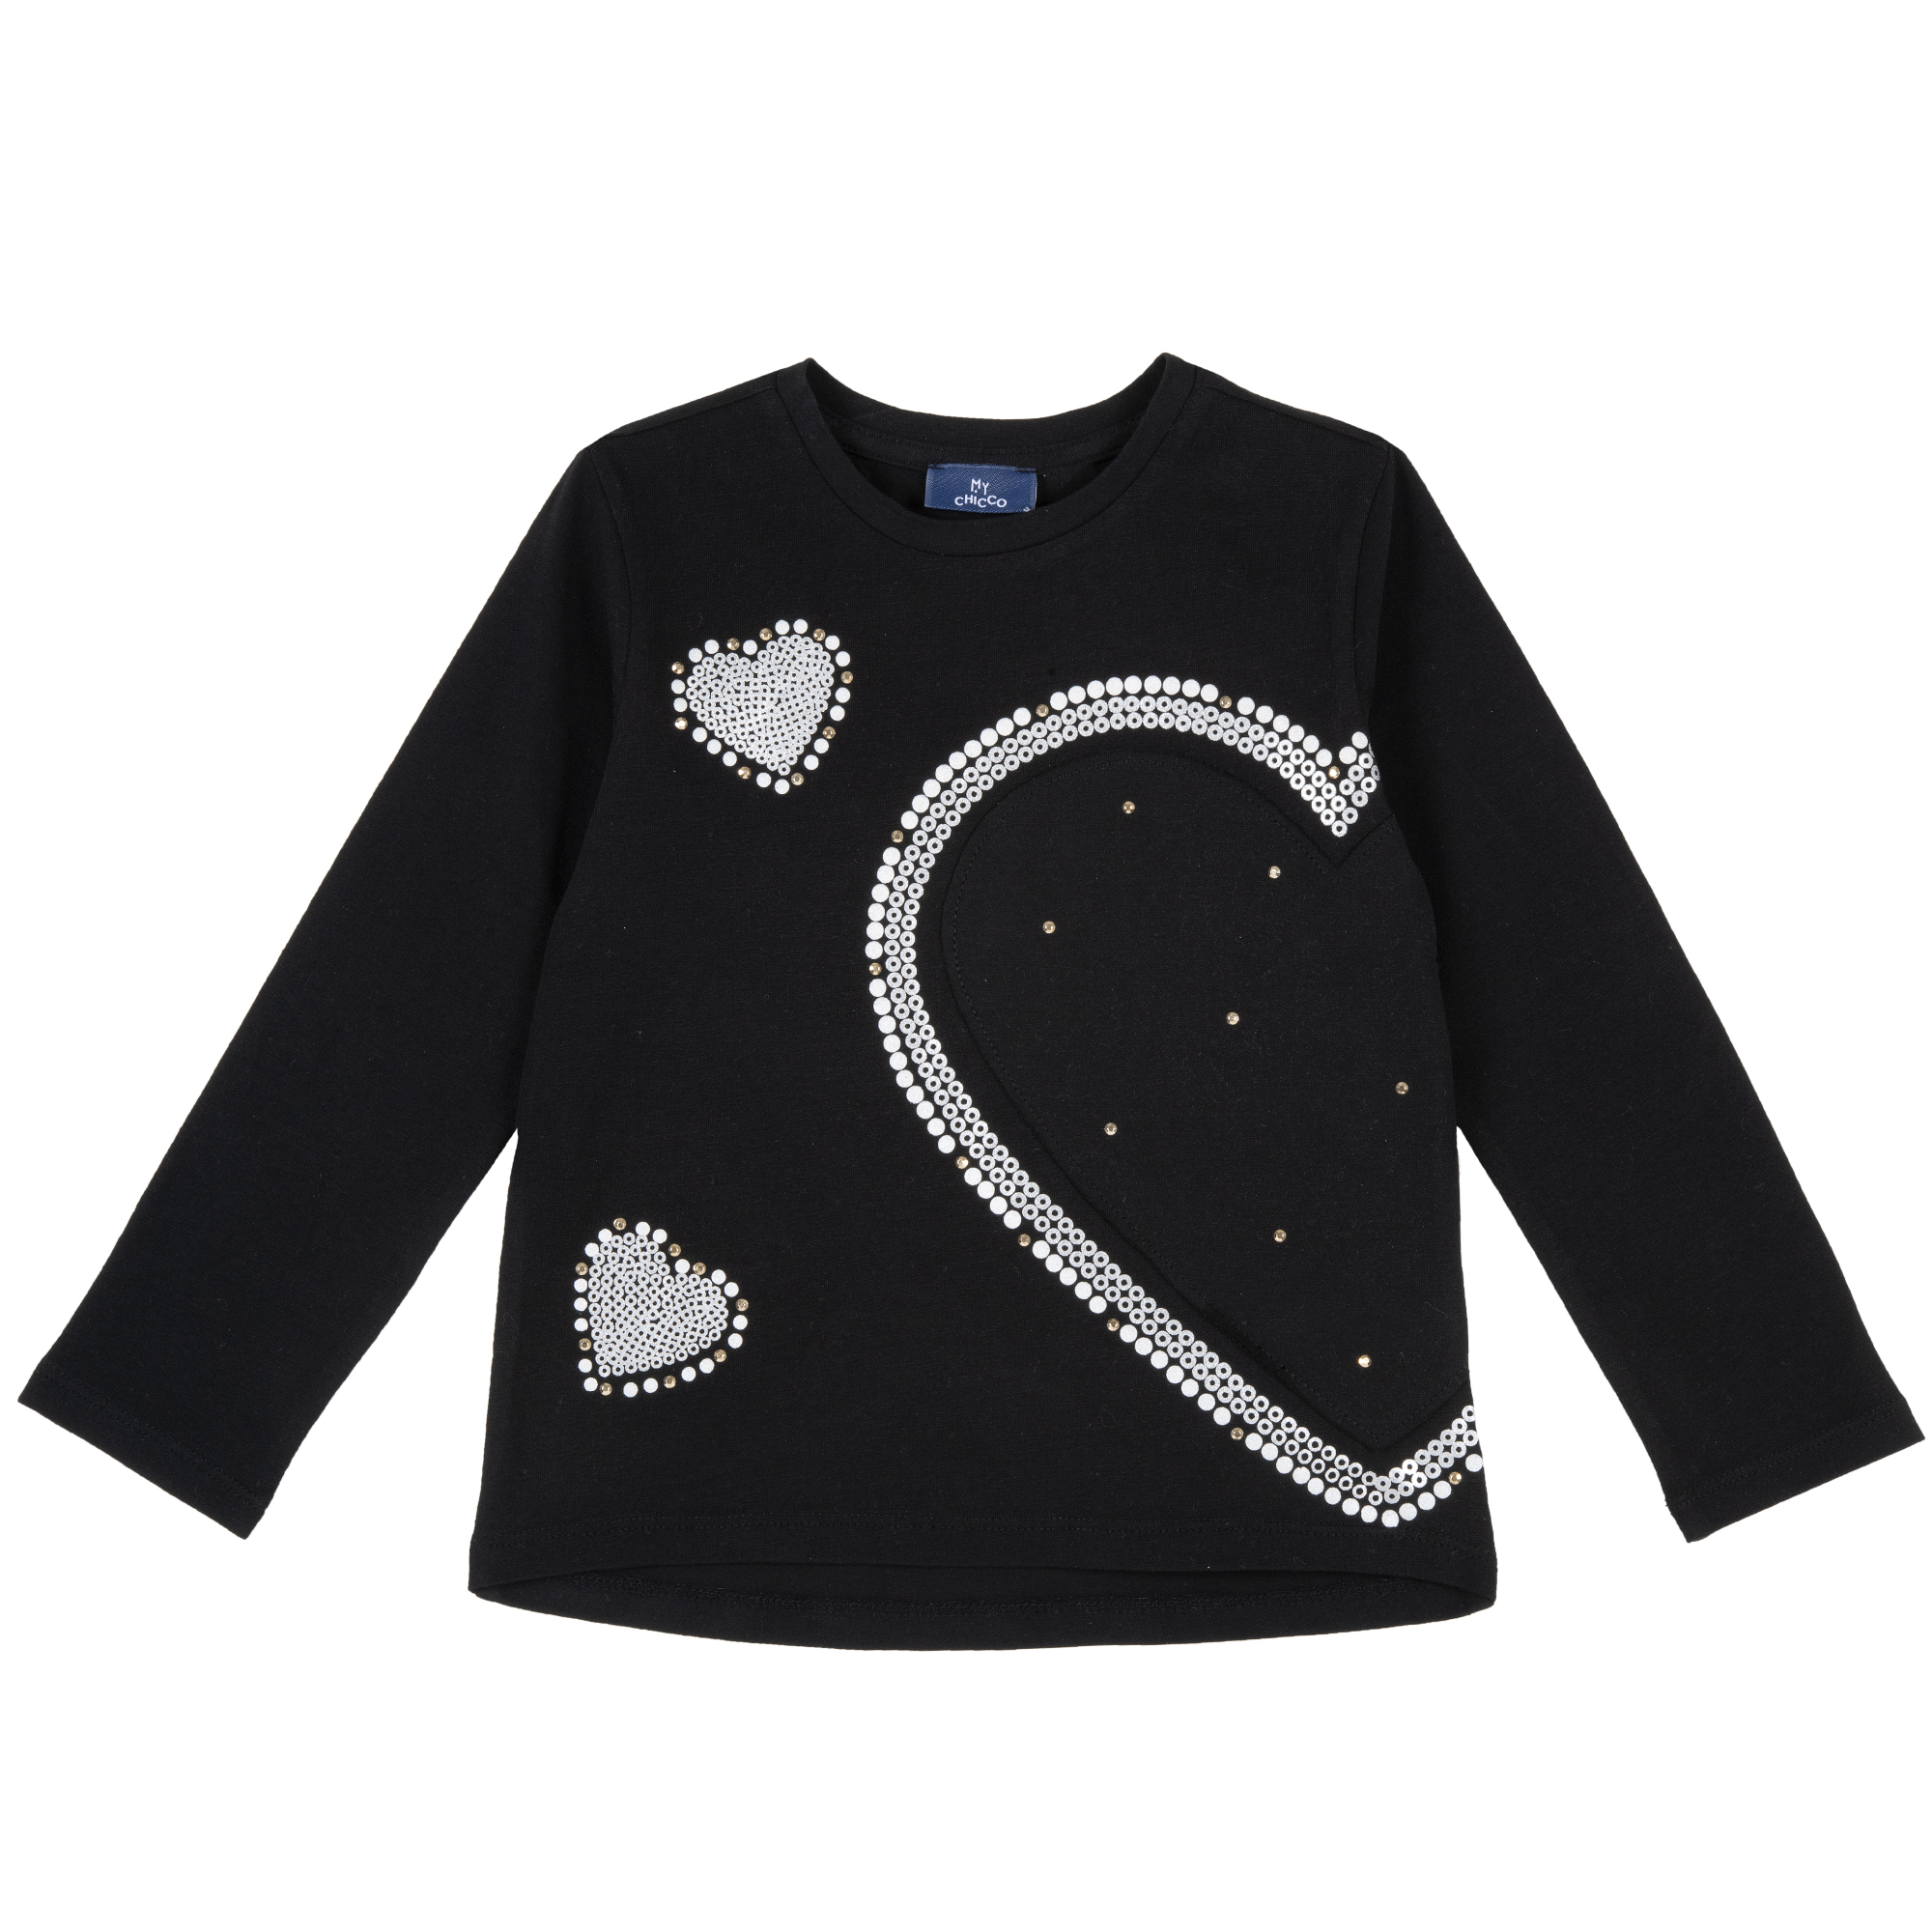 Bluza copii Chicco, negru cu elemente decorative, 06336